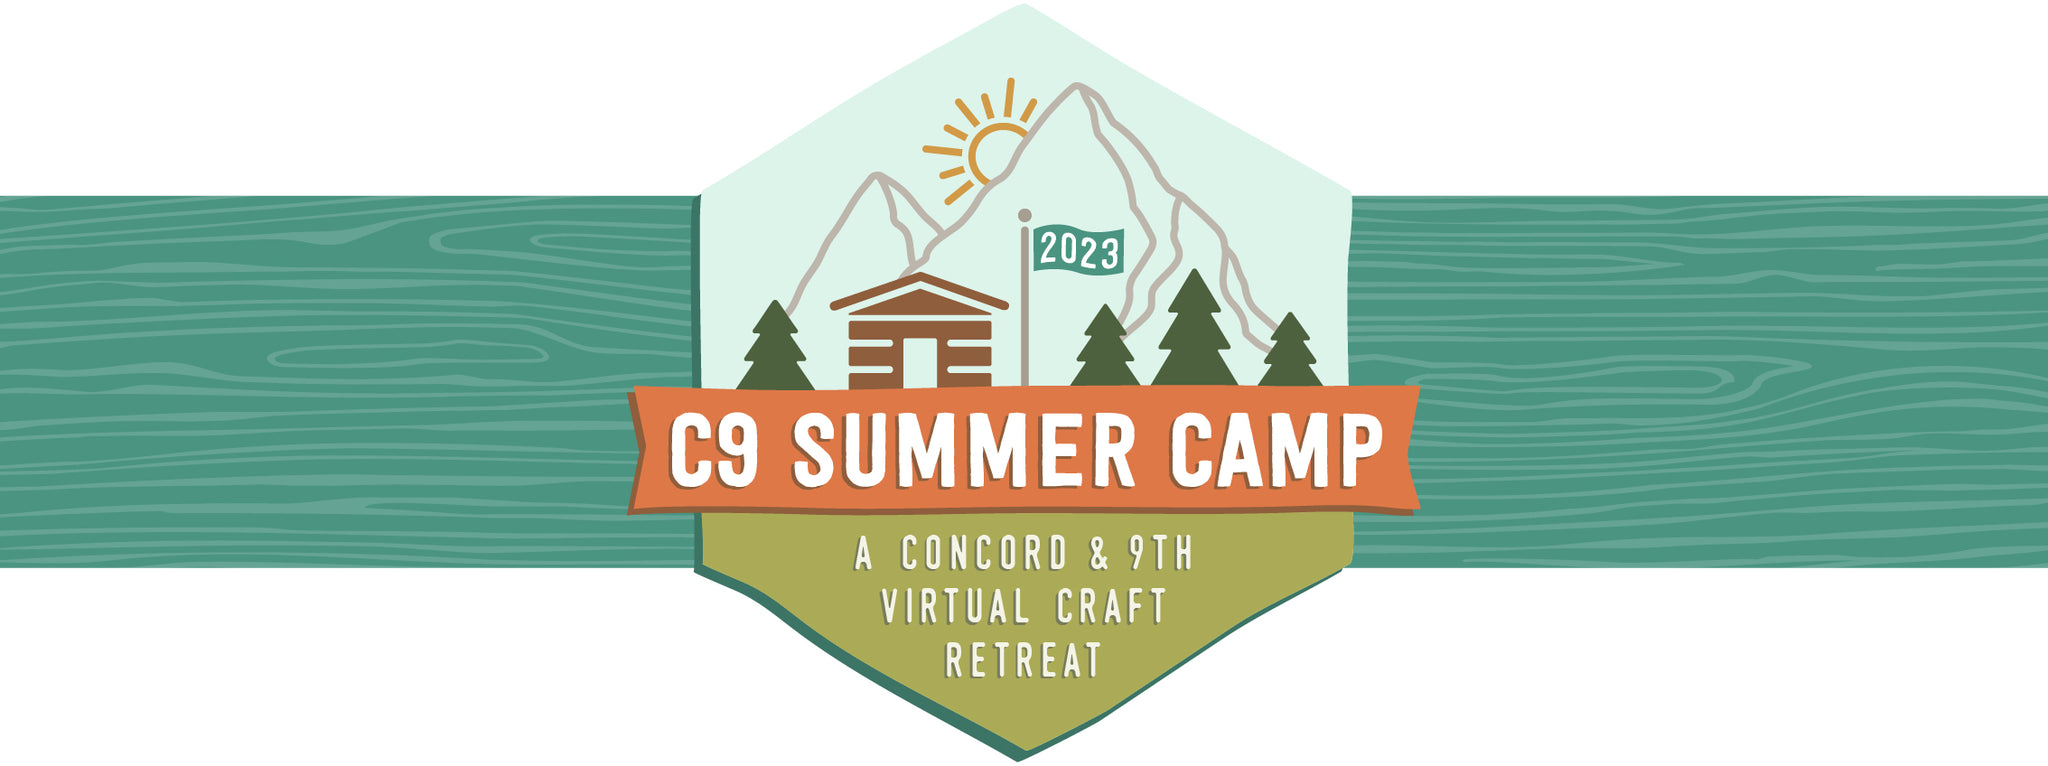 C9 Summer Camp